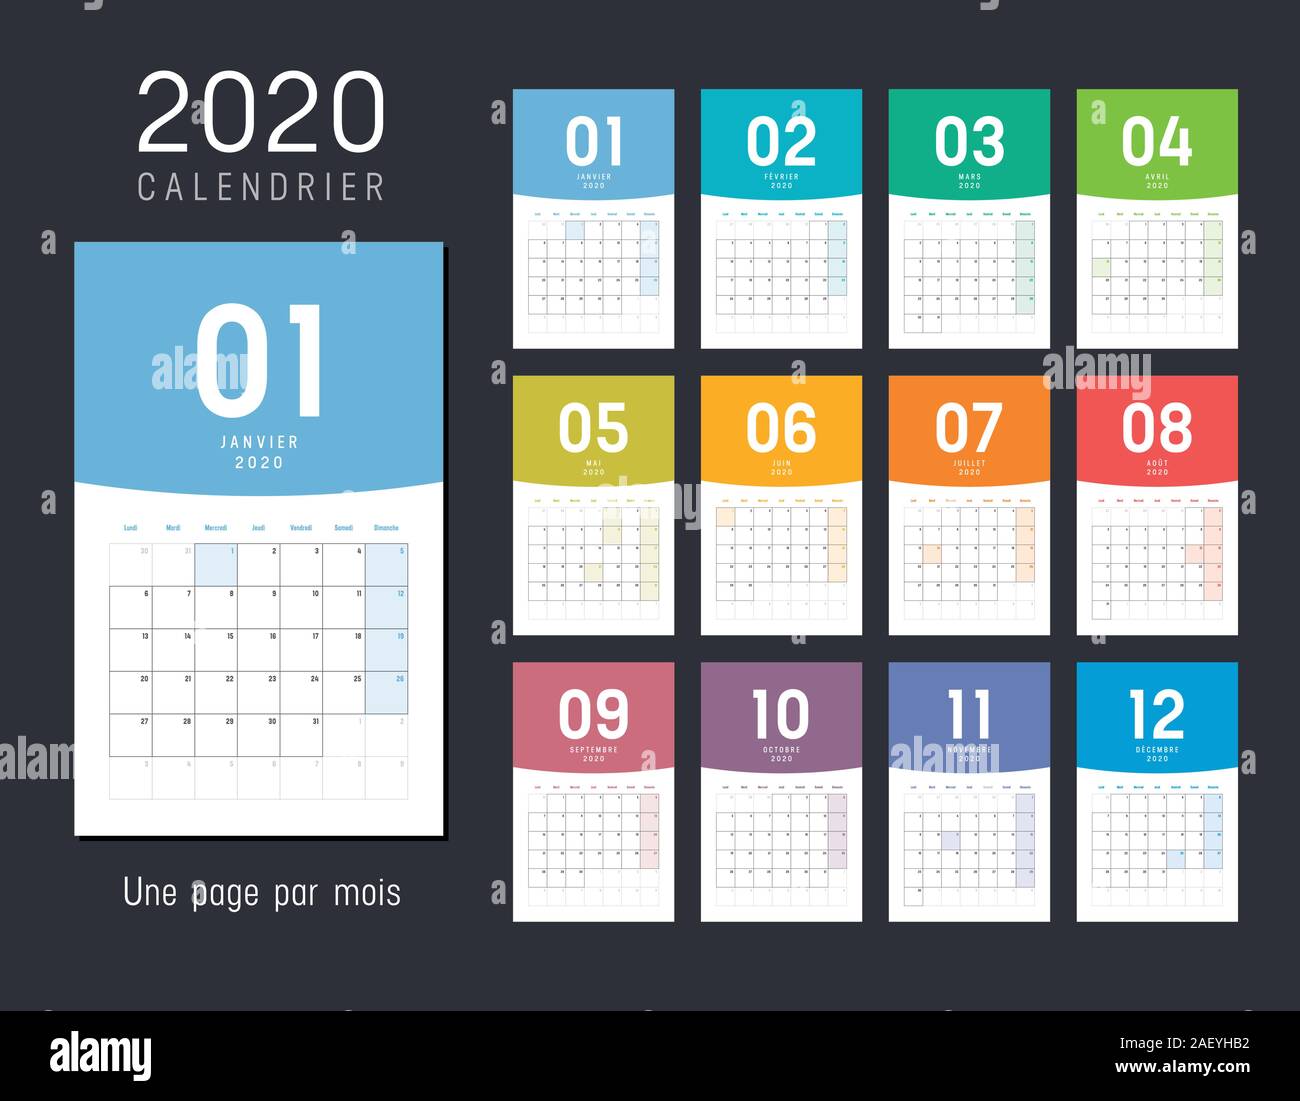 Anno 2020 mensile calendario desk, in lingua francese. Template vettoriale. Illustrazione Vettoriale